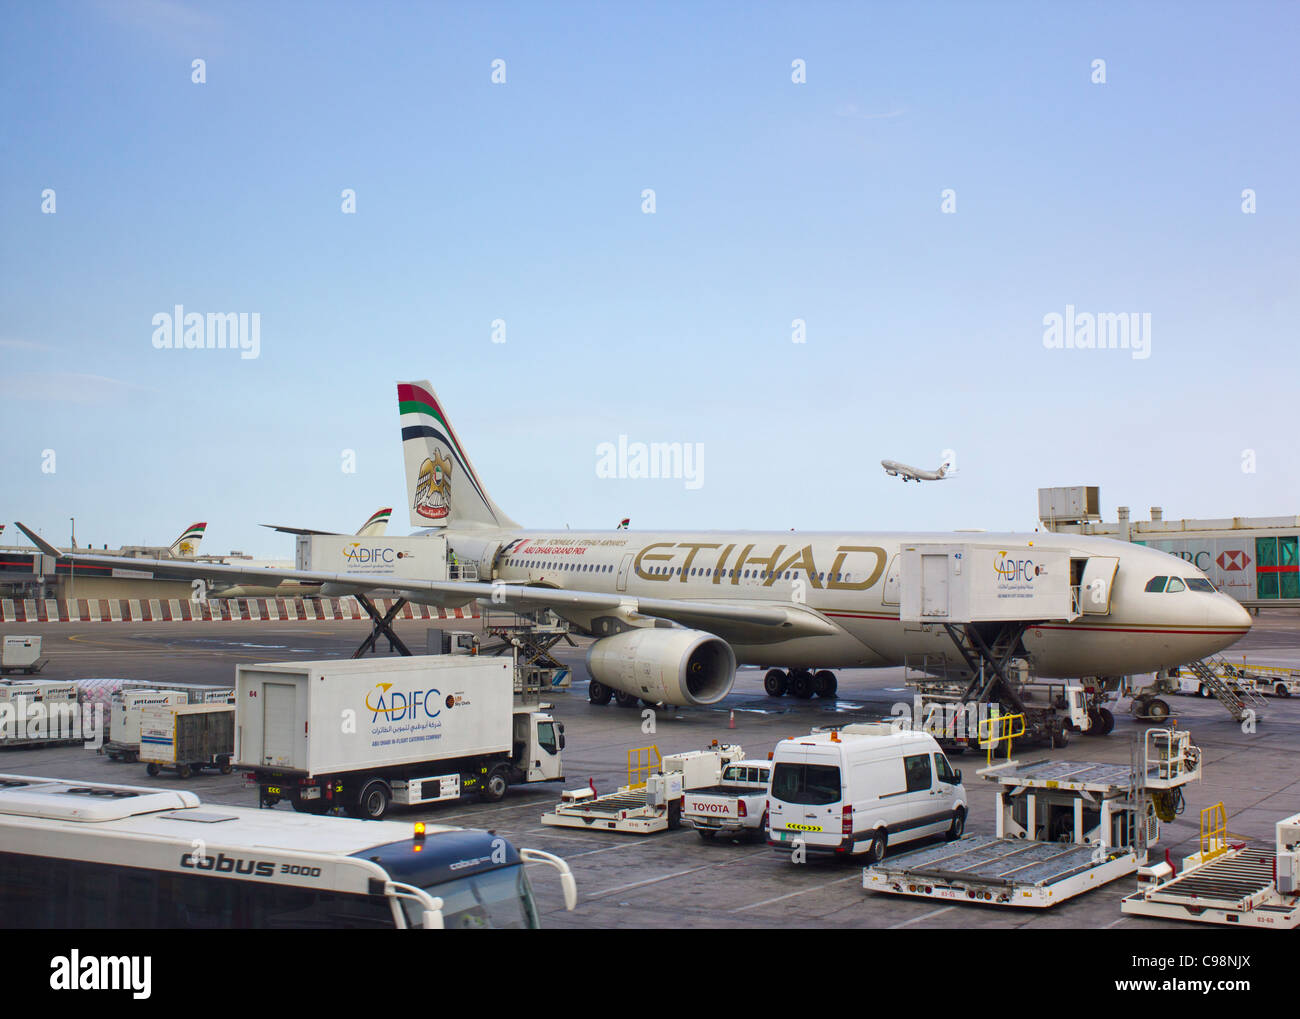 Airbus A330-200 Etihad Airways avion à l'aérogare 1, l'aéroport d'Abu Dhabi, Émirats arabes unis ; un autre avion d'Etihad en arrière-plan Banque D'Images